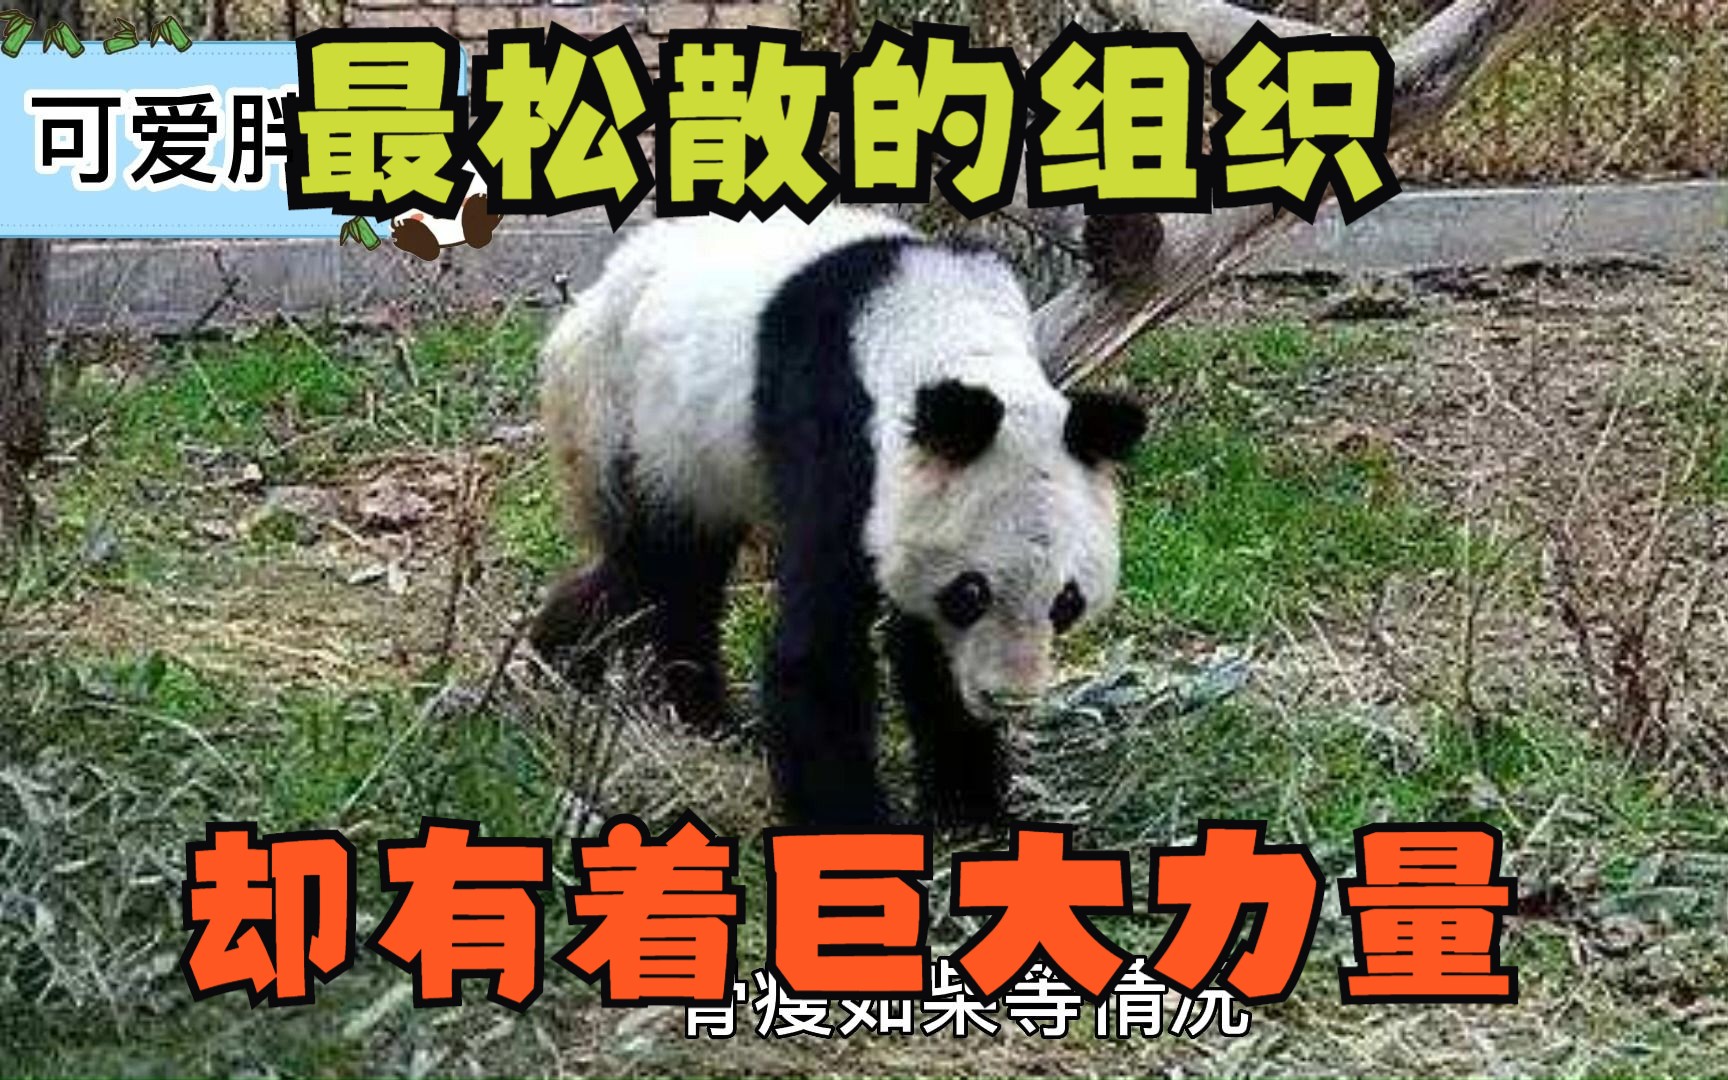 这可能是全国最松散的组织了，全靠自发，为拯救大熊猫积极努力奔走！